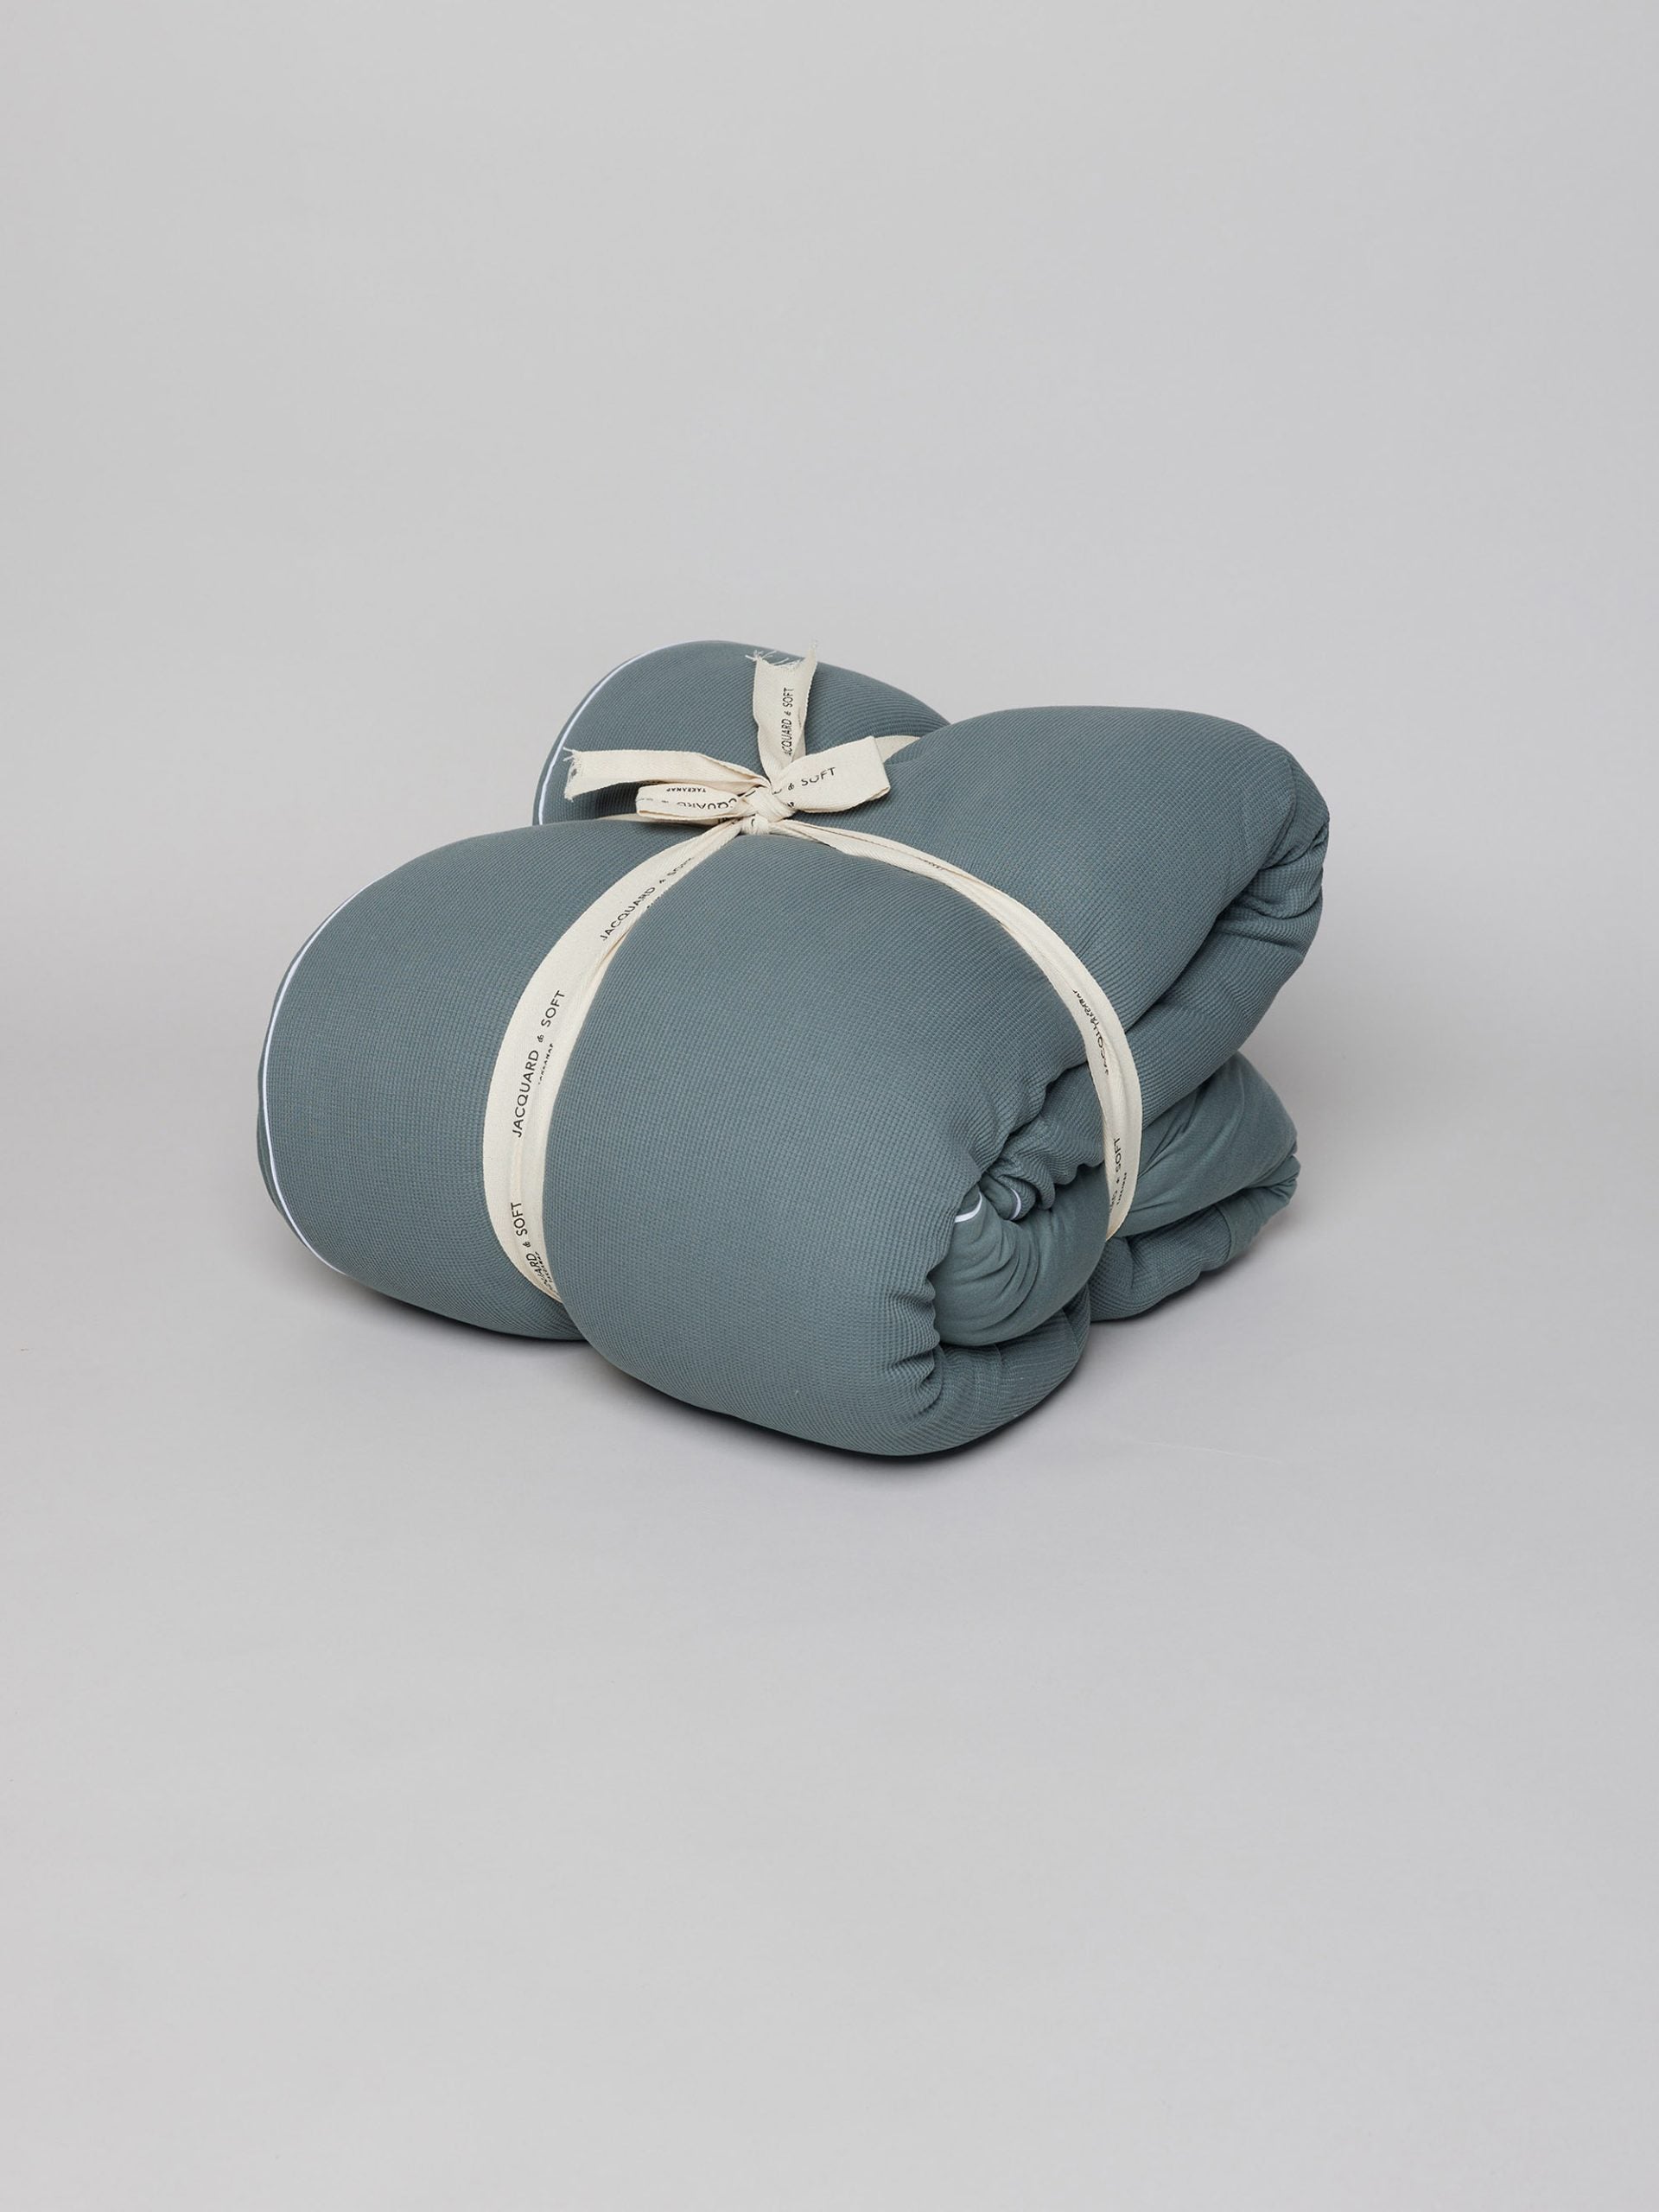 שמיכה למיטה הוליפייבר בצבע אוושן על רקע אפור